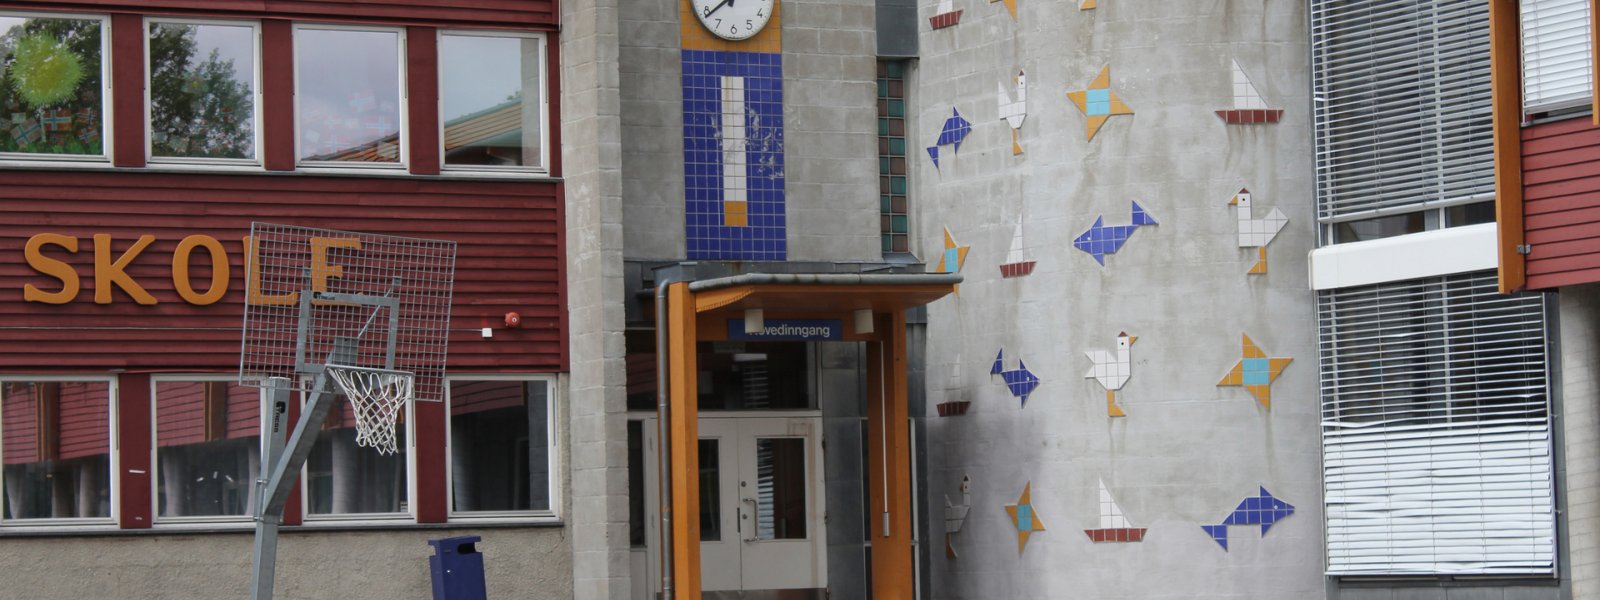 Inngangsparti på barneskole, Akershus.jpg